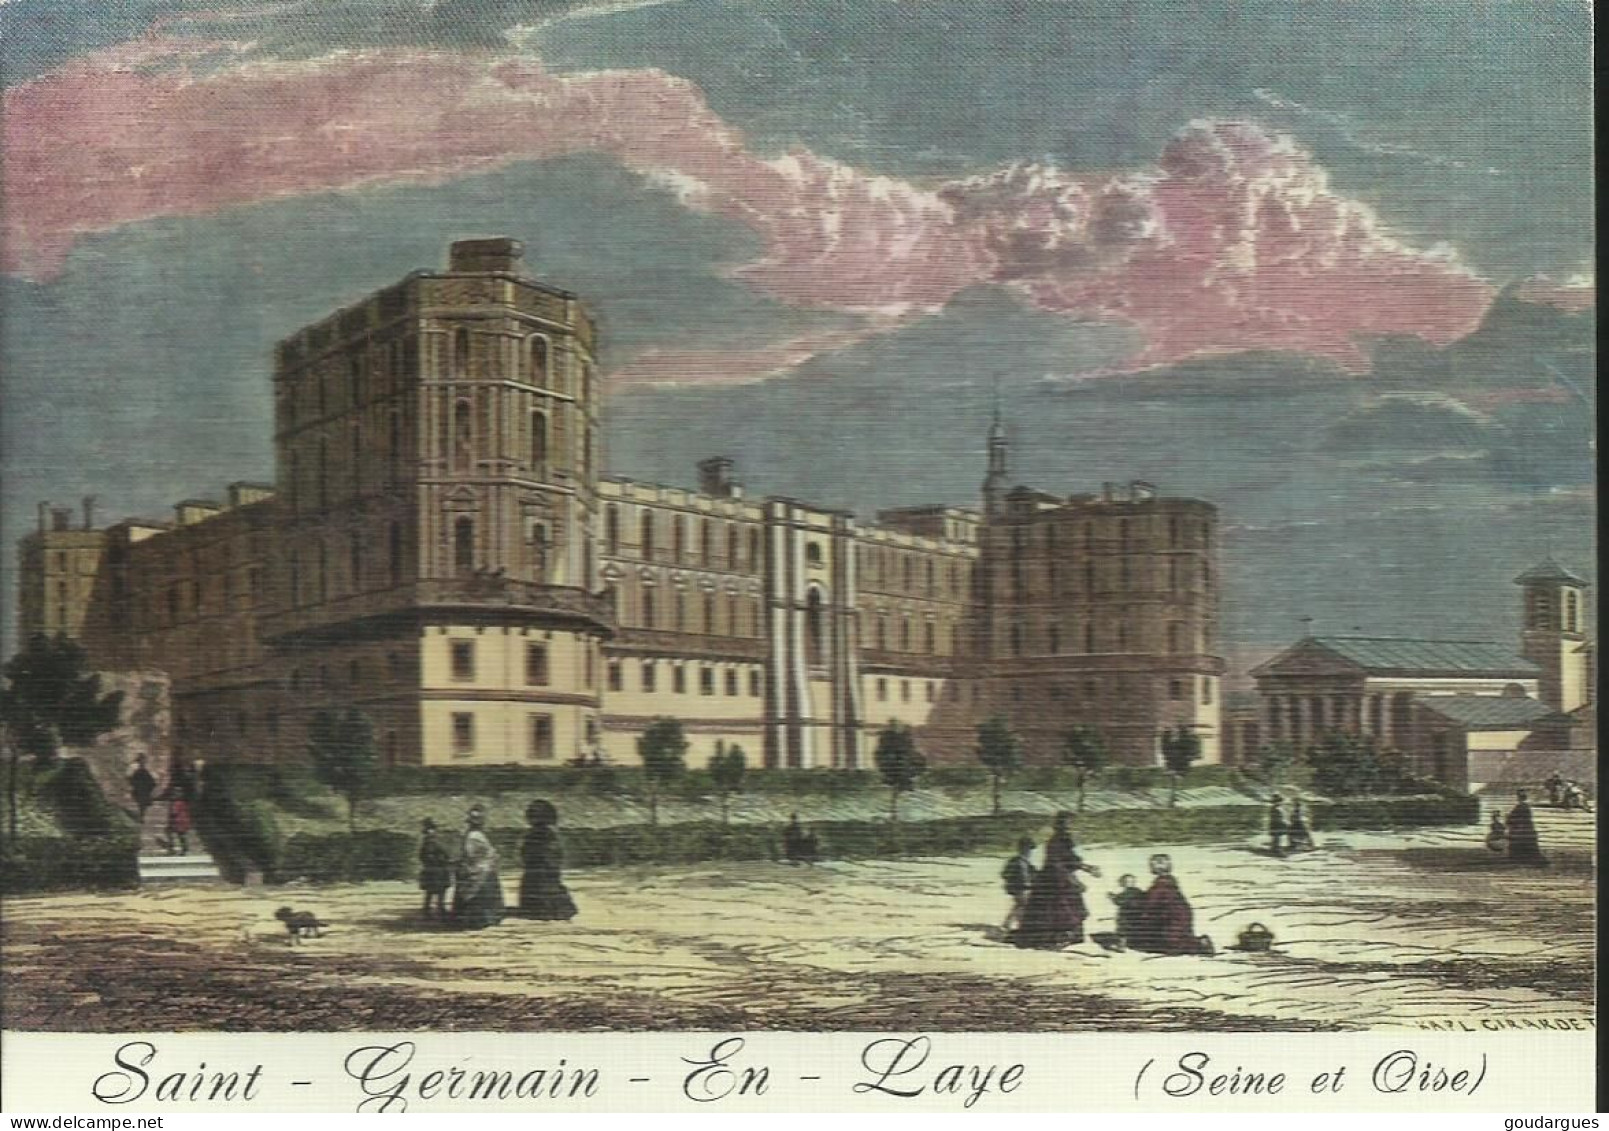 Saint-Germain-en-Laye - Au Temps Jadis - Le Château - (P) - St. Germain En Laye (Kasteel)